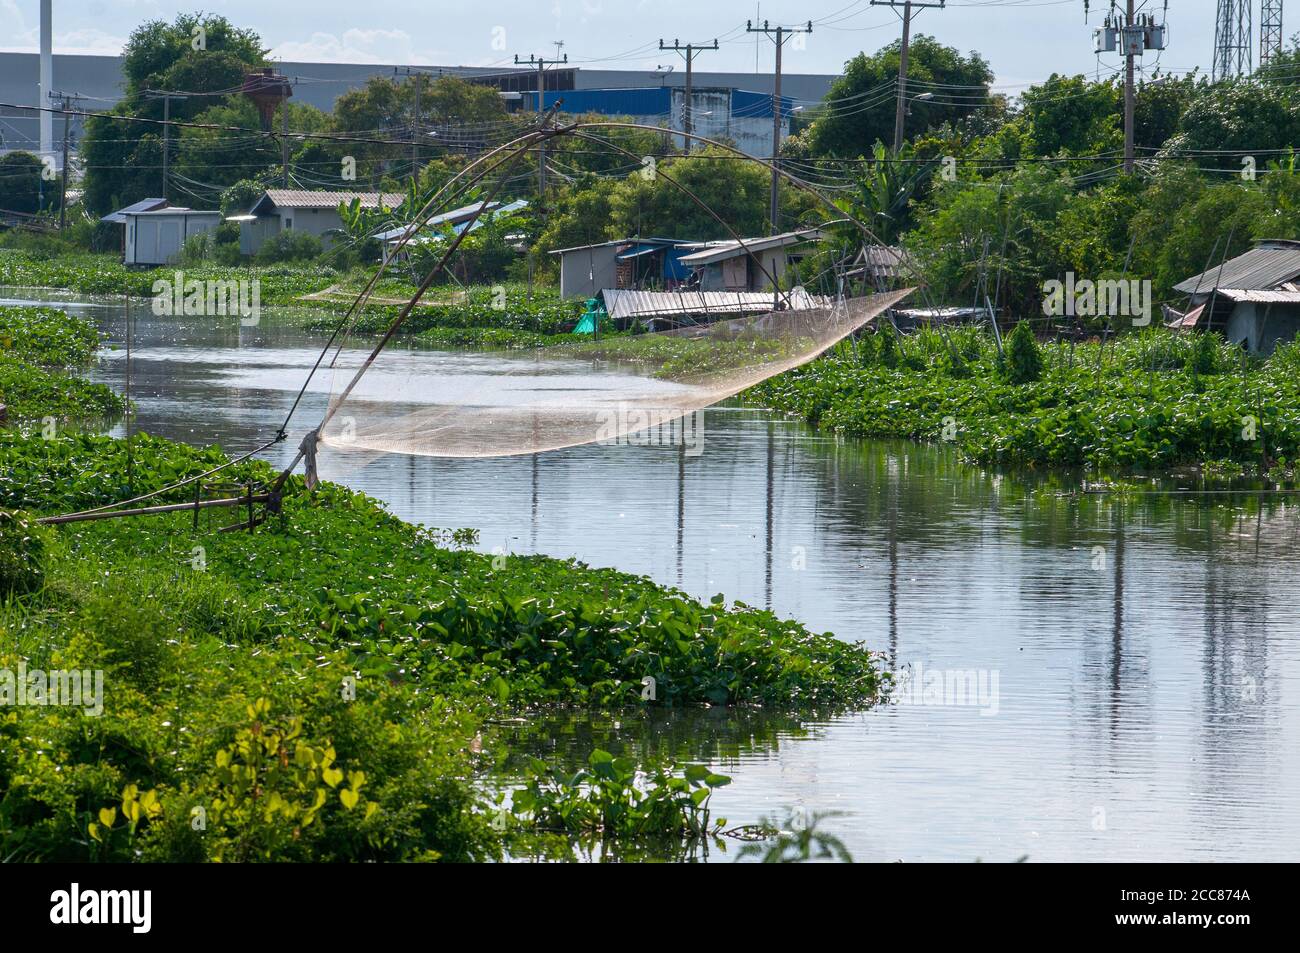 Canale in un'area fortemente industrializzata nel distretto di Bangsaothong, nella provincia di Samut Prakan in Thailandia. Anche nelle zone industrializzate della Thailandia, cana Foto Stock